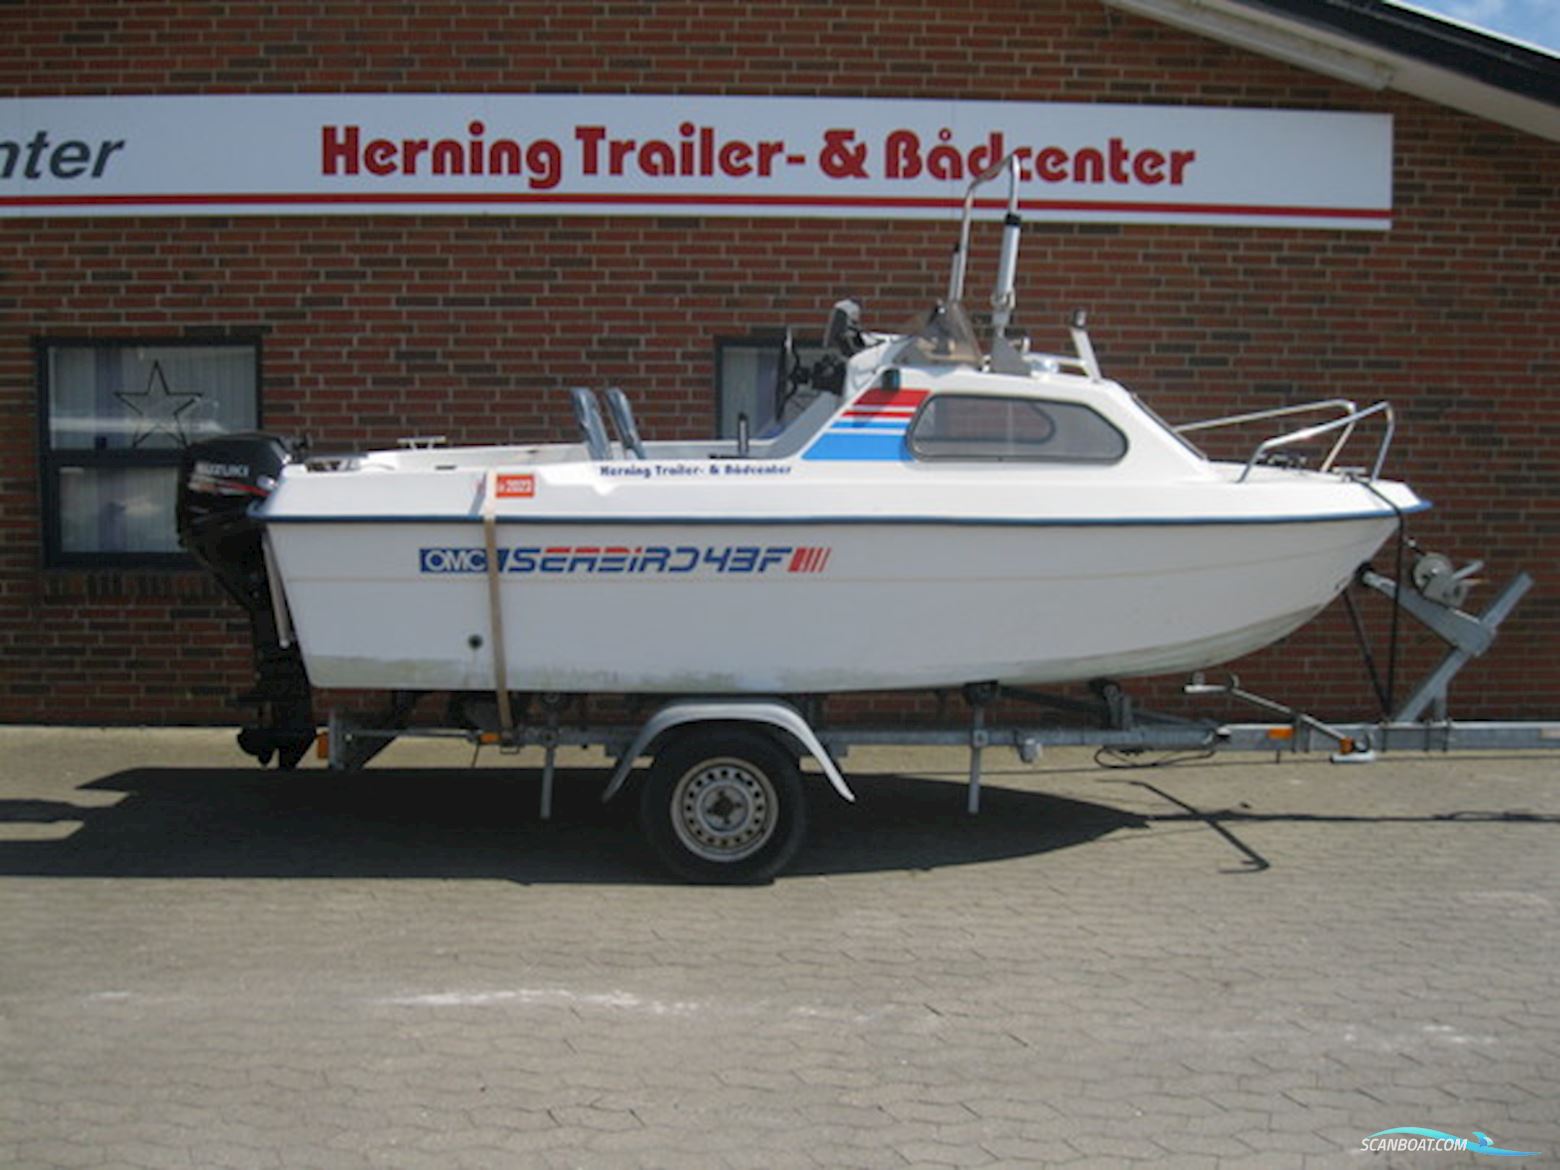 Ryds/Seabird 435 m/Suzuki DF30 hk Efi 4-Takt og Brenderup Trailer Motorboot 2001, mit Suzuki motor, Dänemark